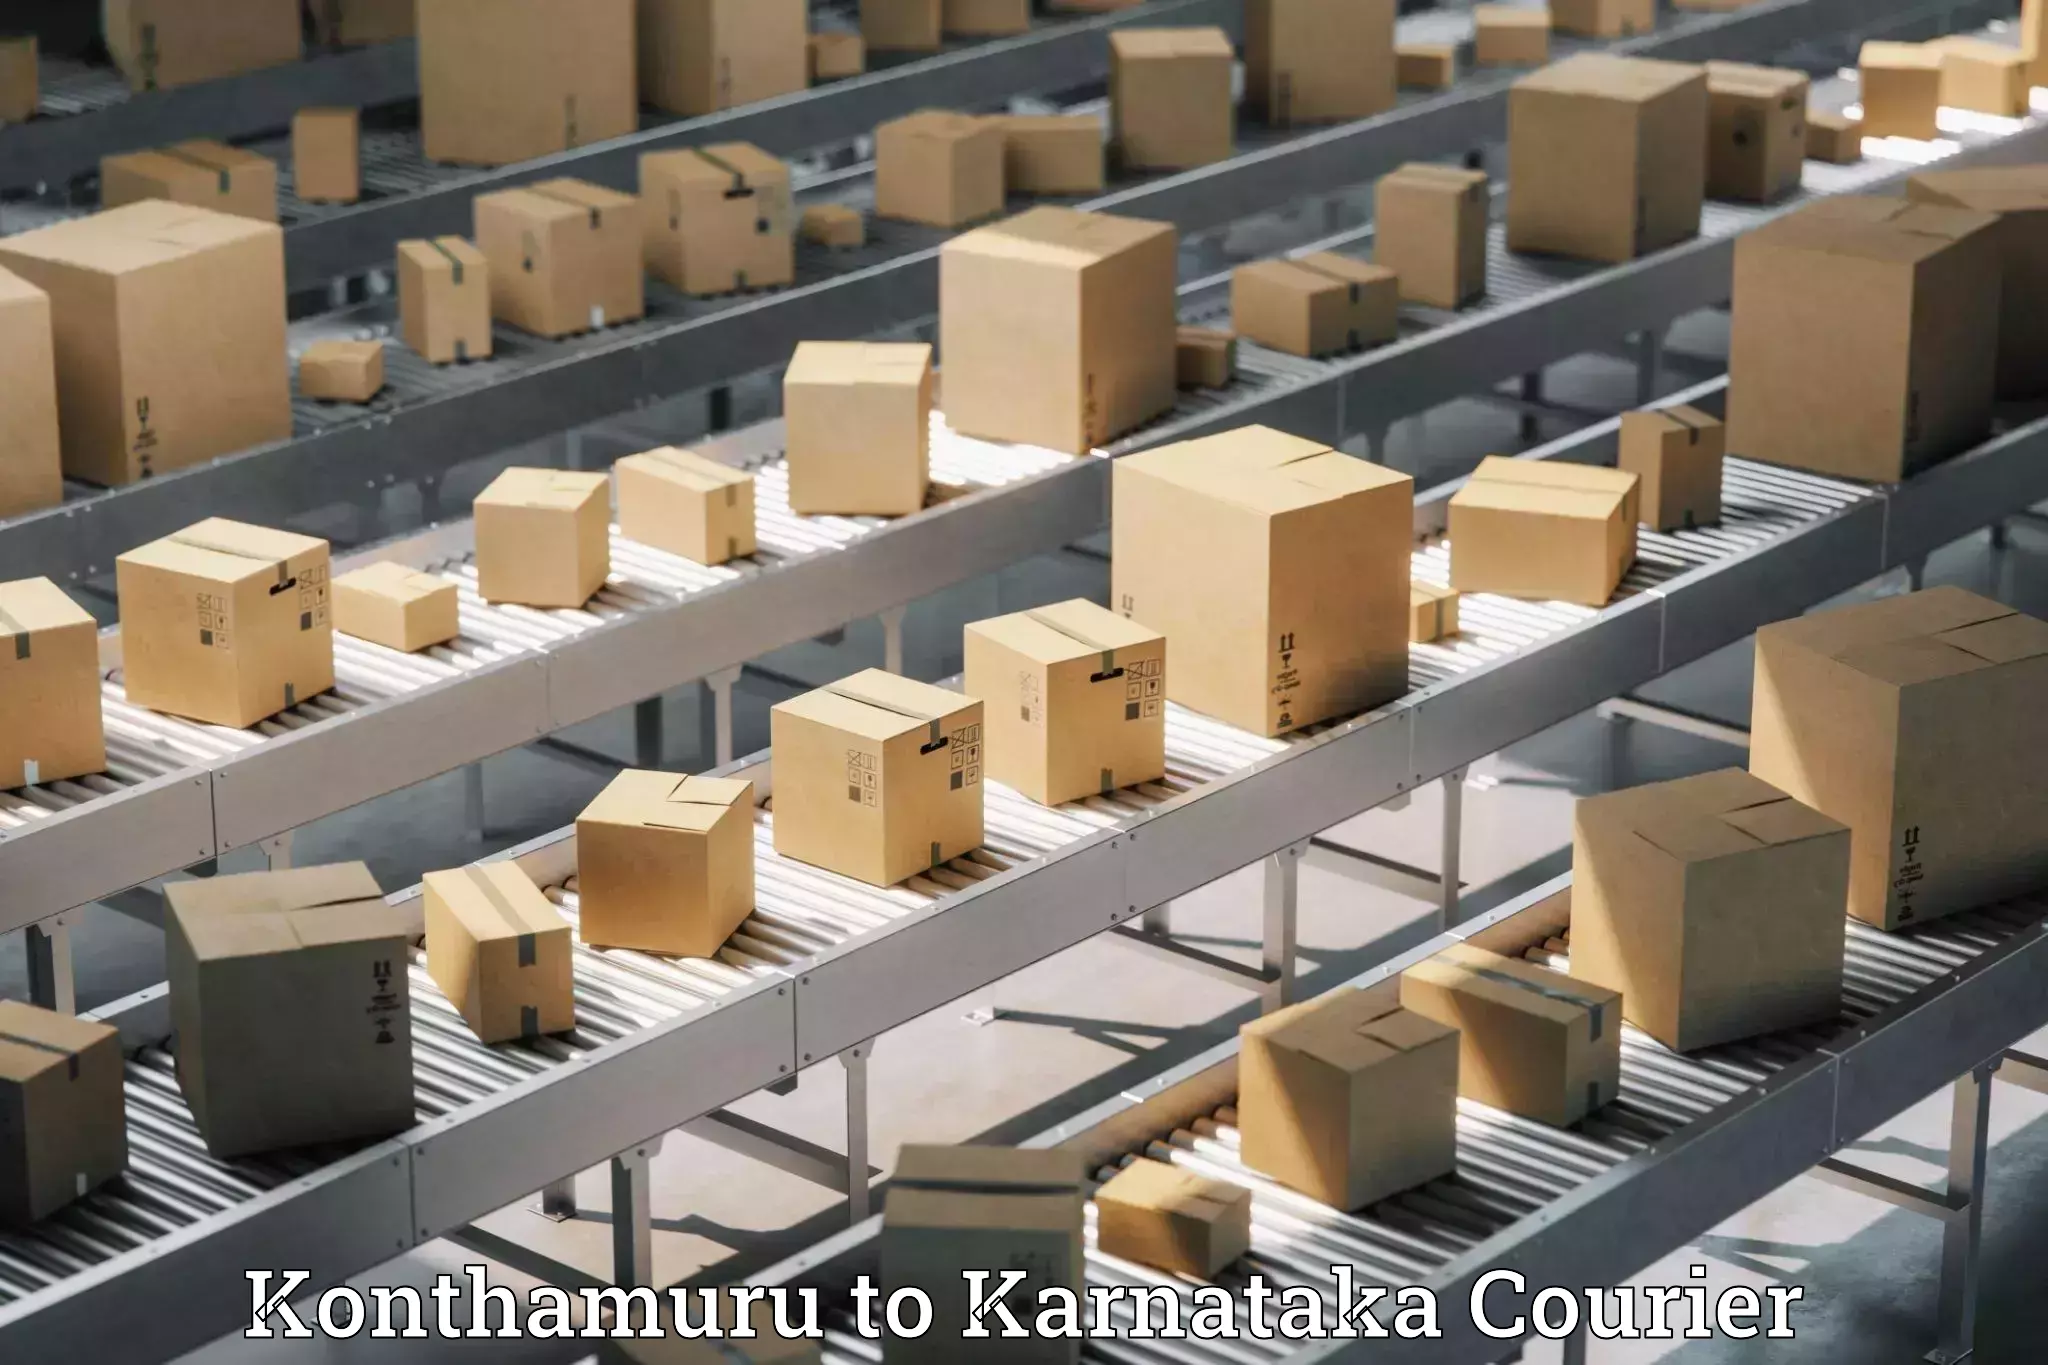 Logistics service provider Konthamuru to Udupi